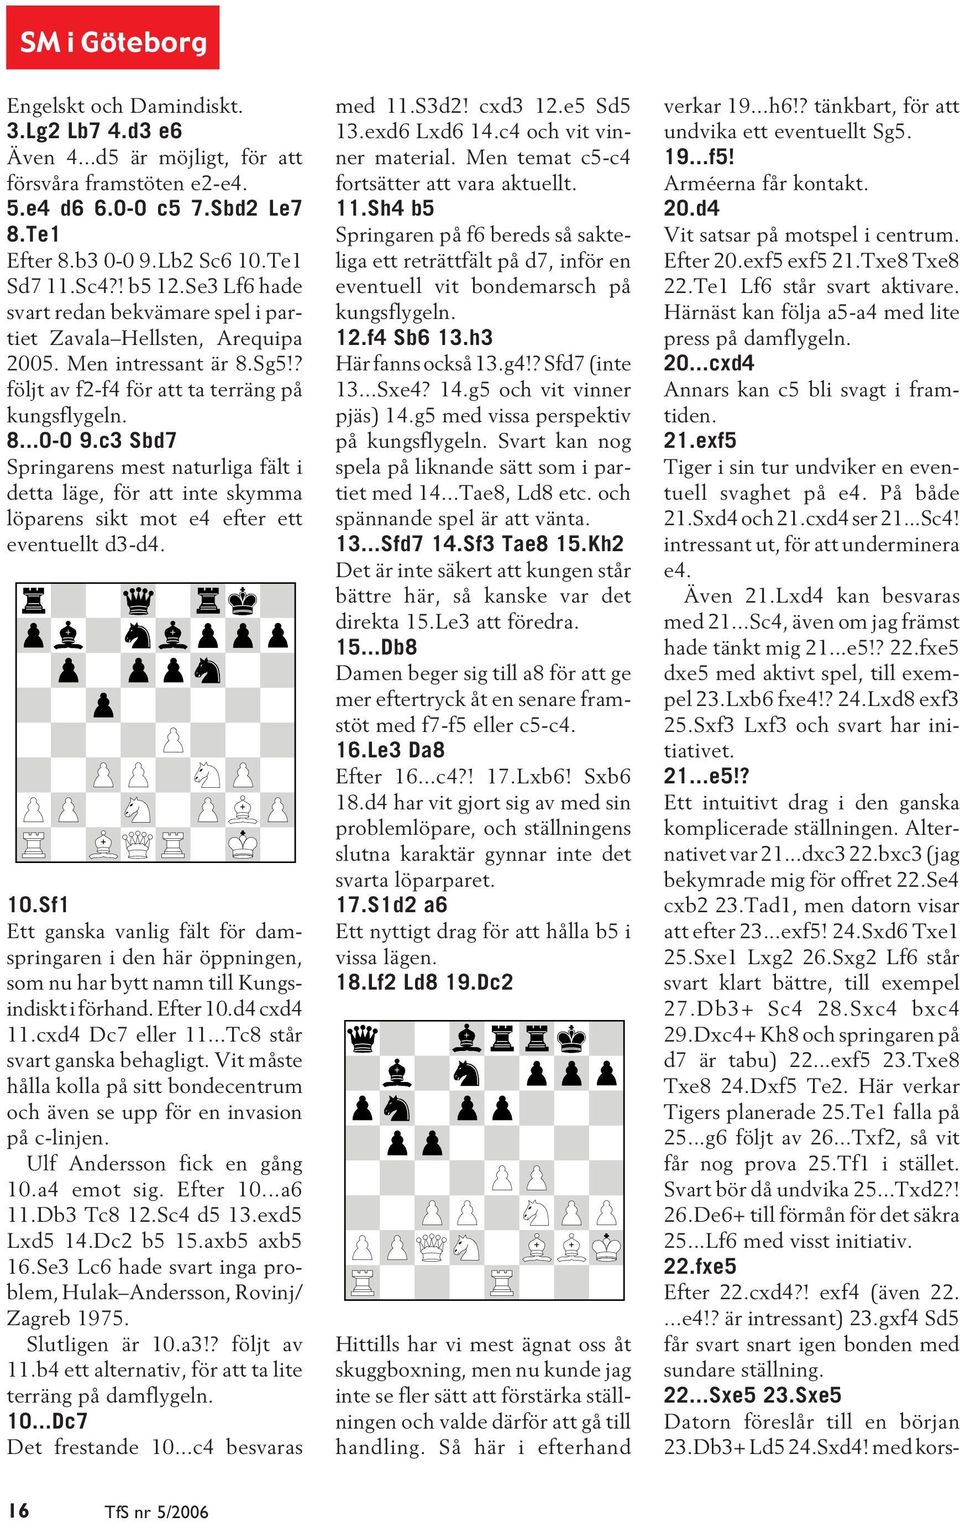 c3 Sbd7 Springarens mest naturliga fält i detta läge, för att inte skymma löparens sikt mot e4 efter ett eventuellt d3-d4. 10.